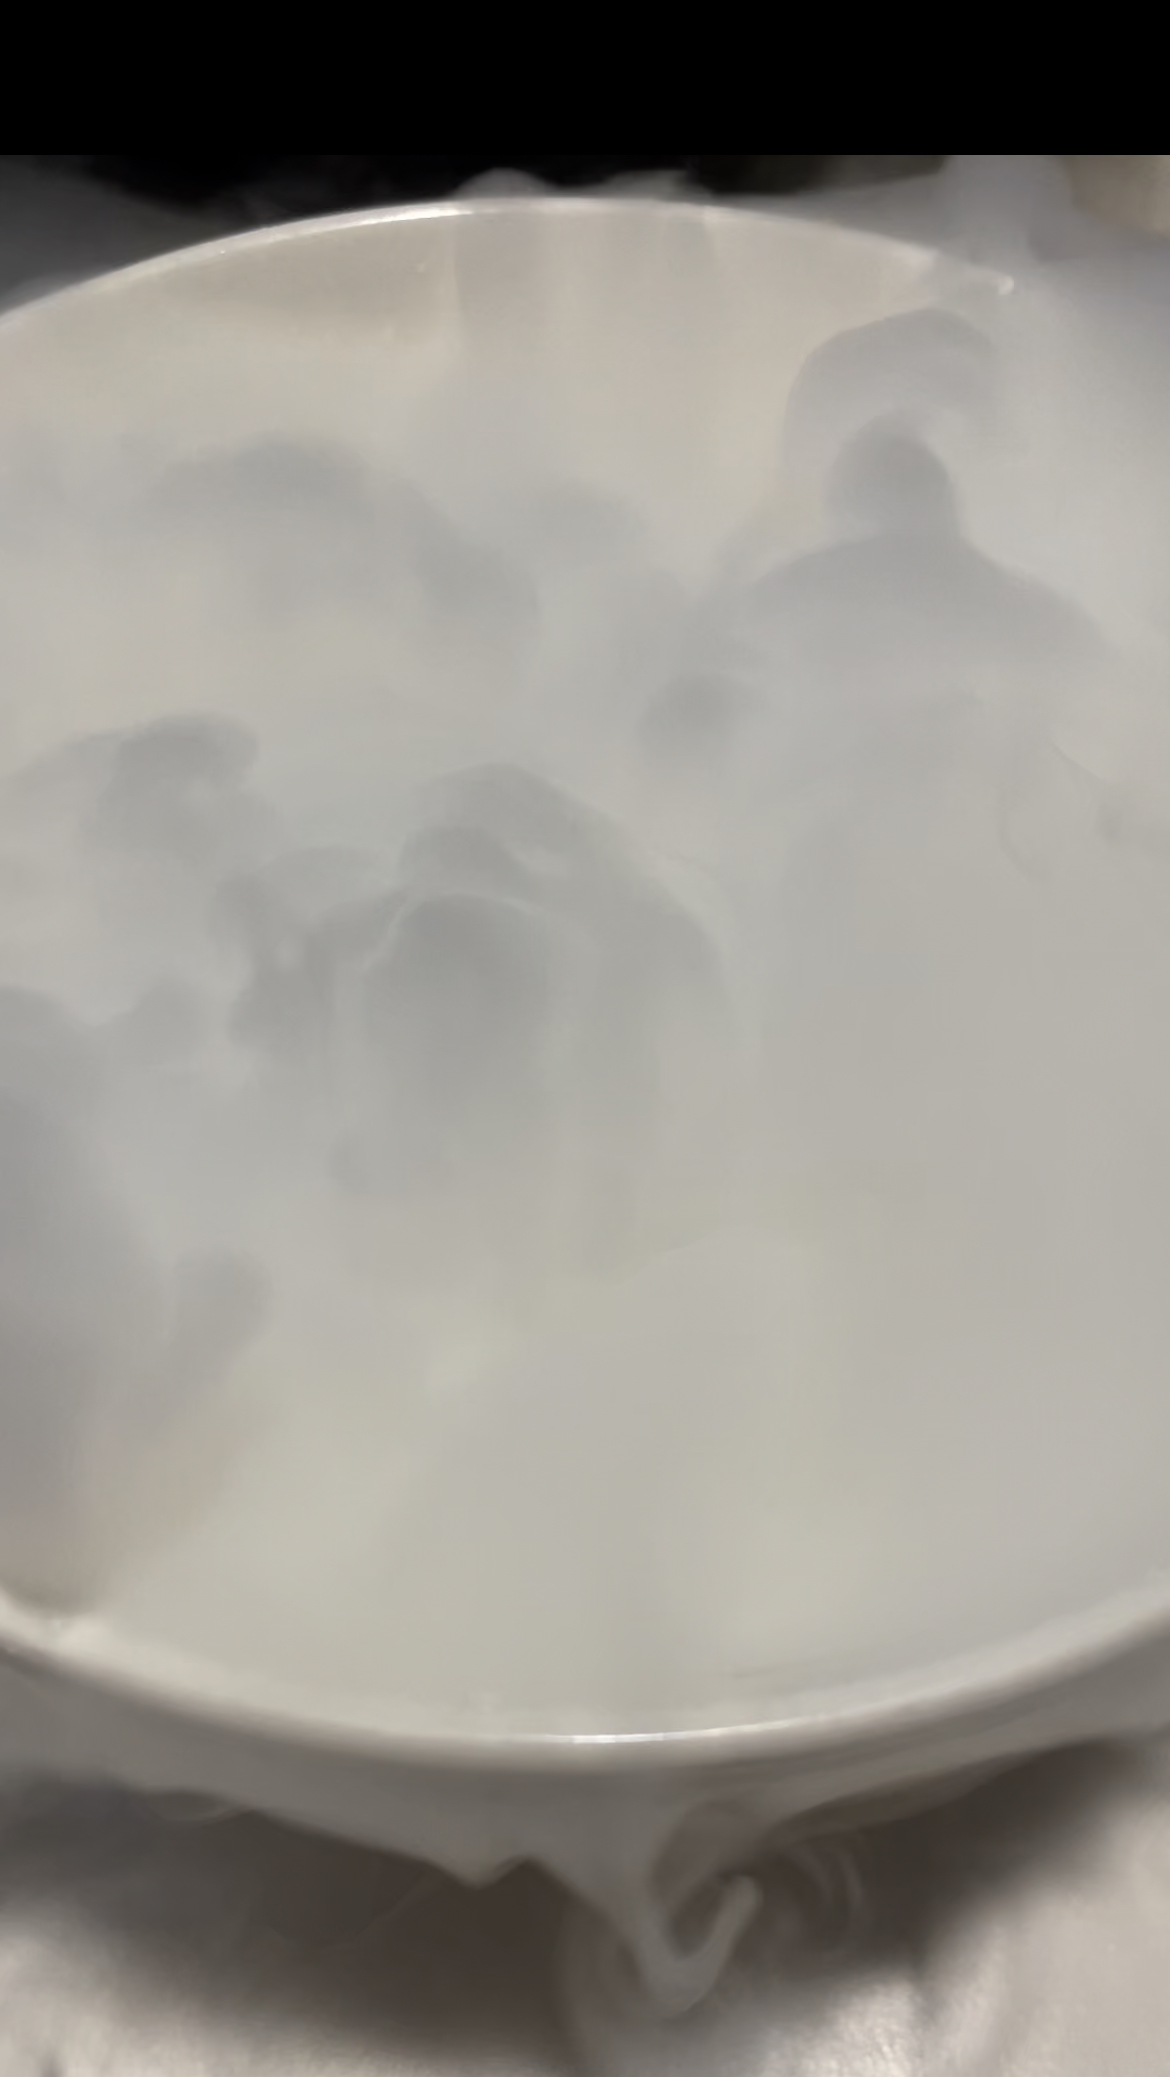 하얀 연기가 자욱한 드라이아이스 기화 장면